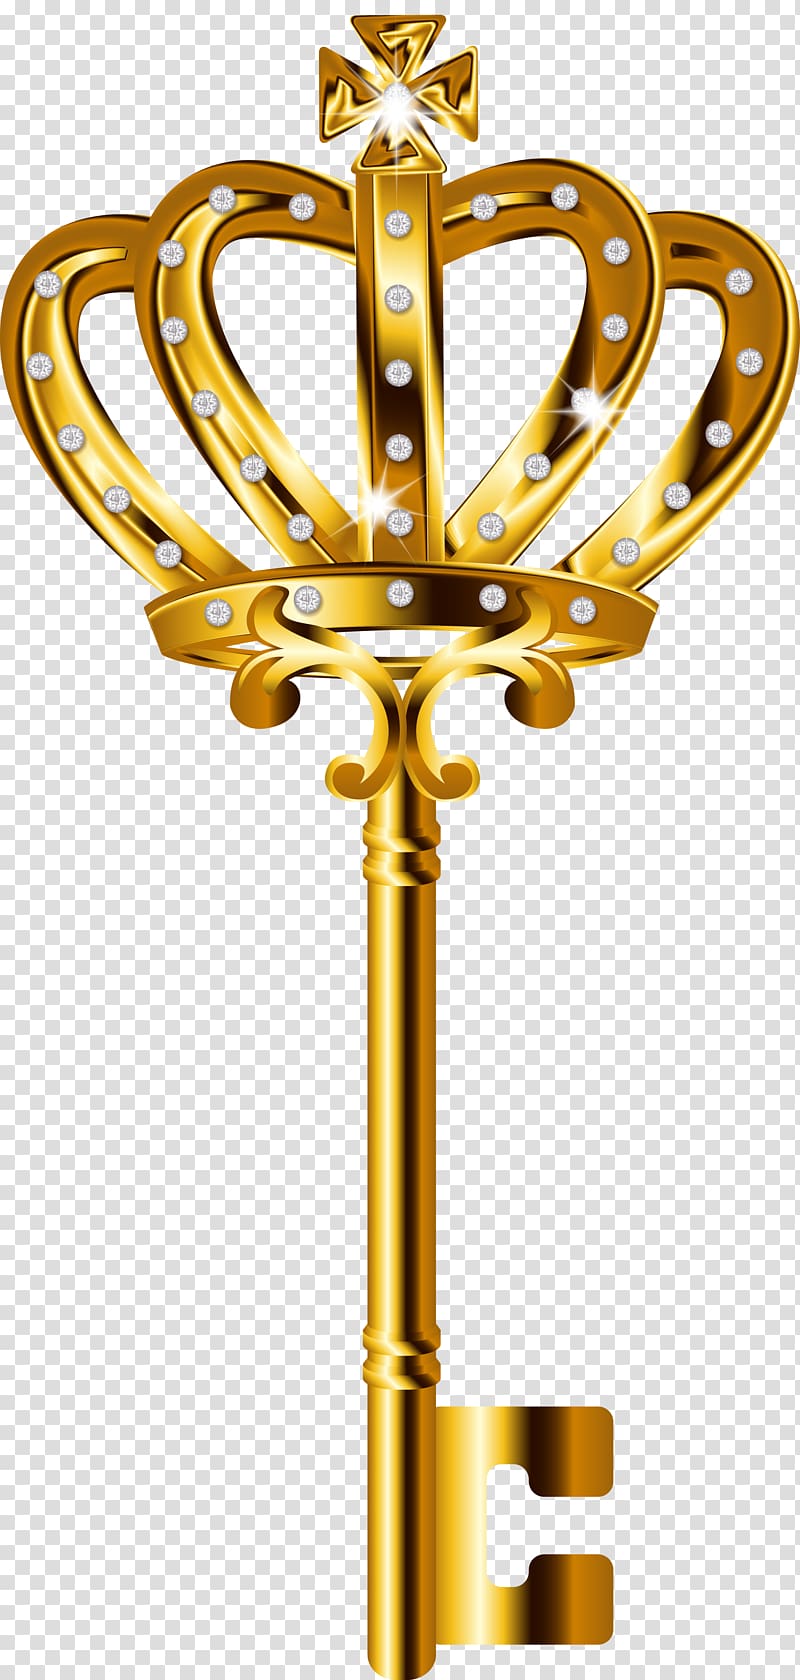 gold crown skeleton key , , Golden Key transparent background PNG clipart